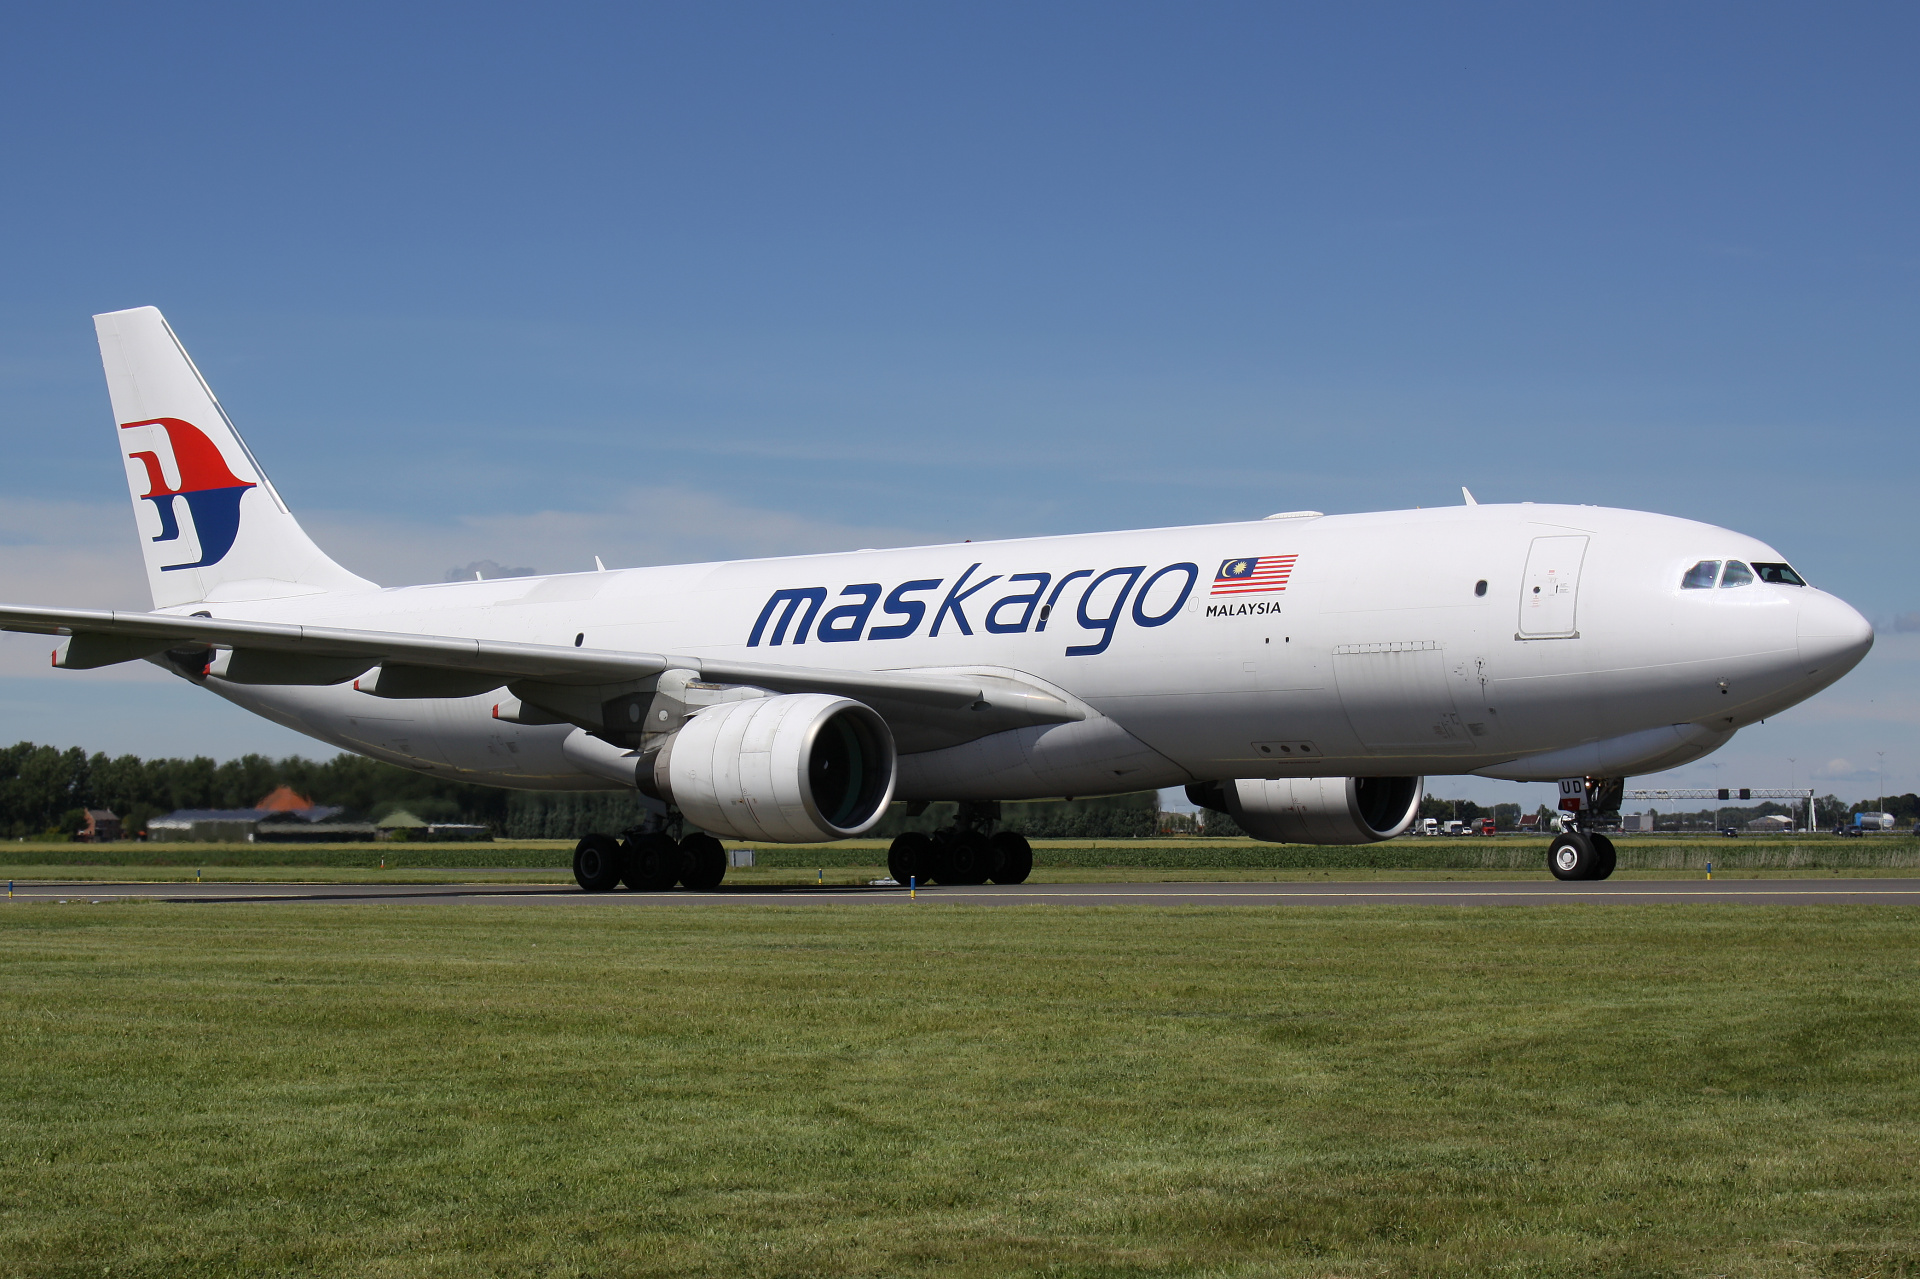 9M-MUD, MASkargo (Samoloty » Spotting na Schiphol » Airbus A330-200F)